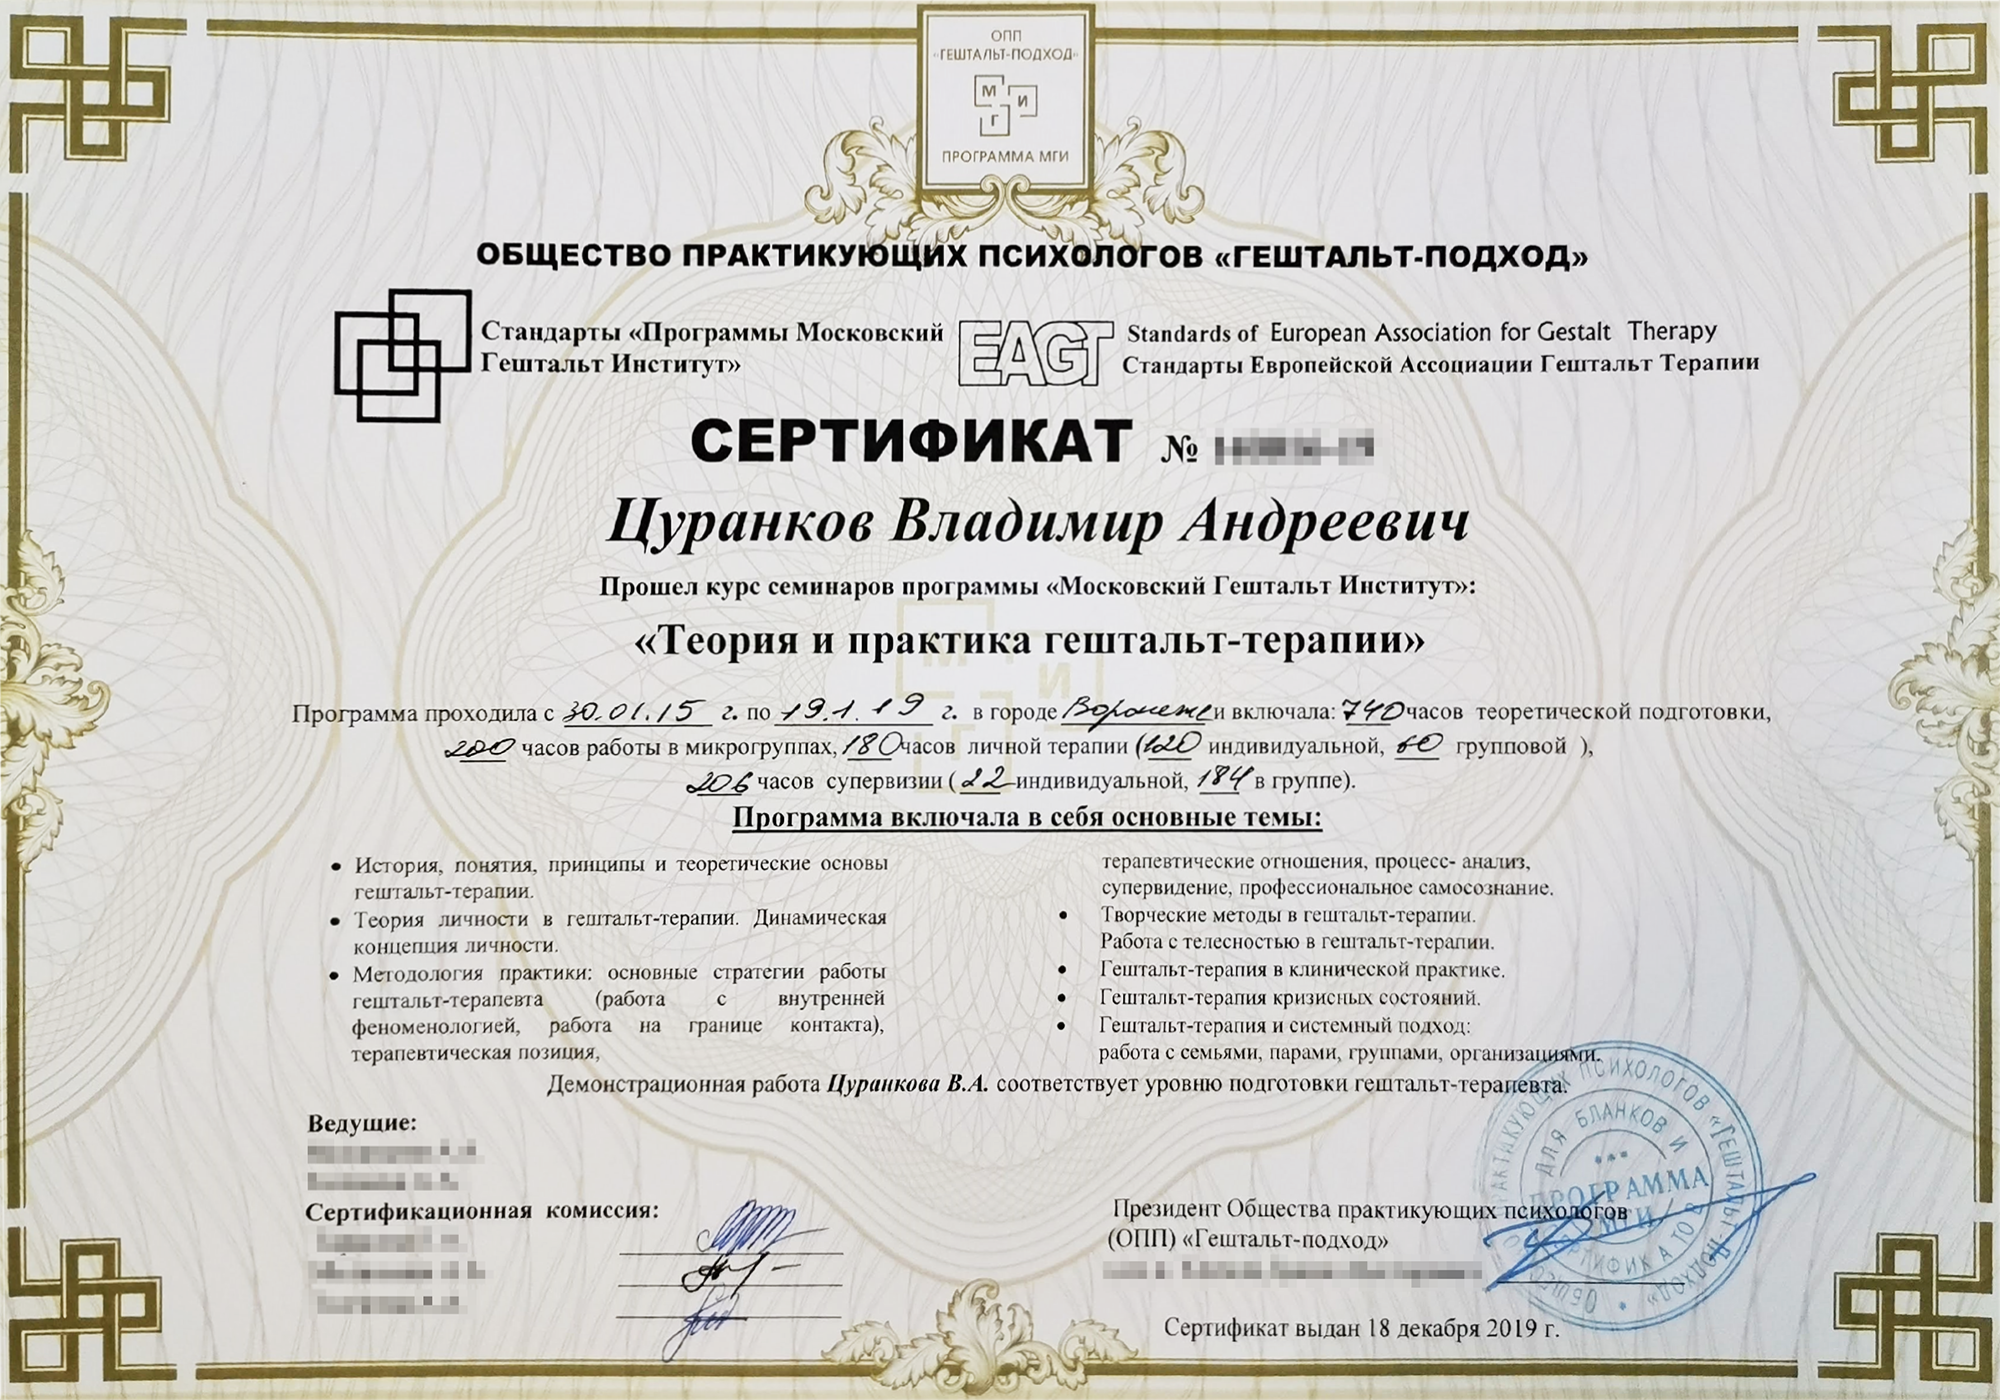 Этот сертификат я получил в 2019&nbsp;году, когда закончил обучение гештальттерапии. Оно длилось 4 года